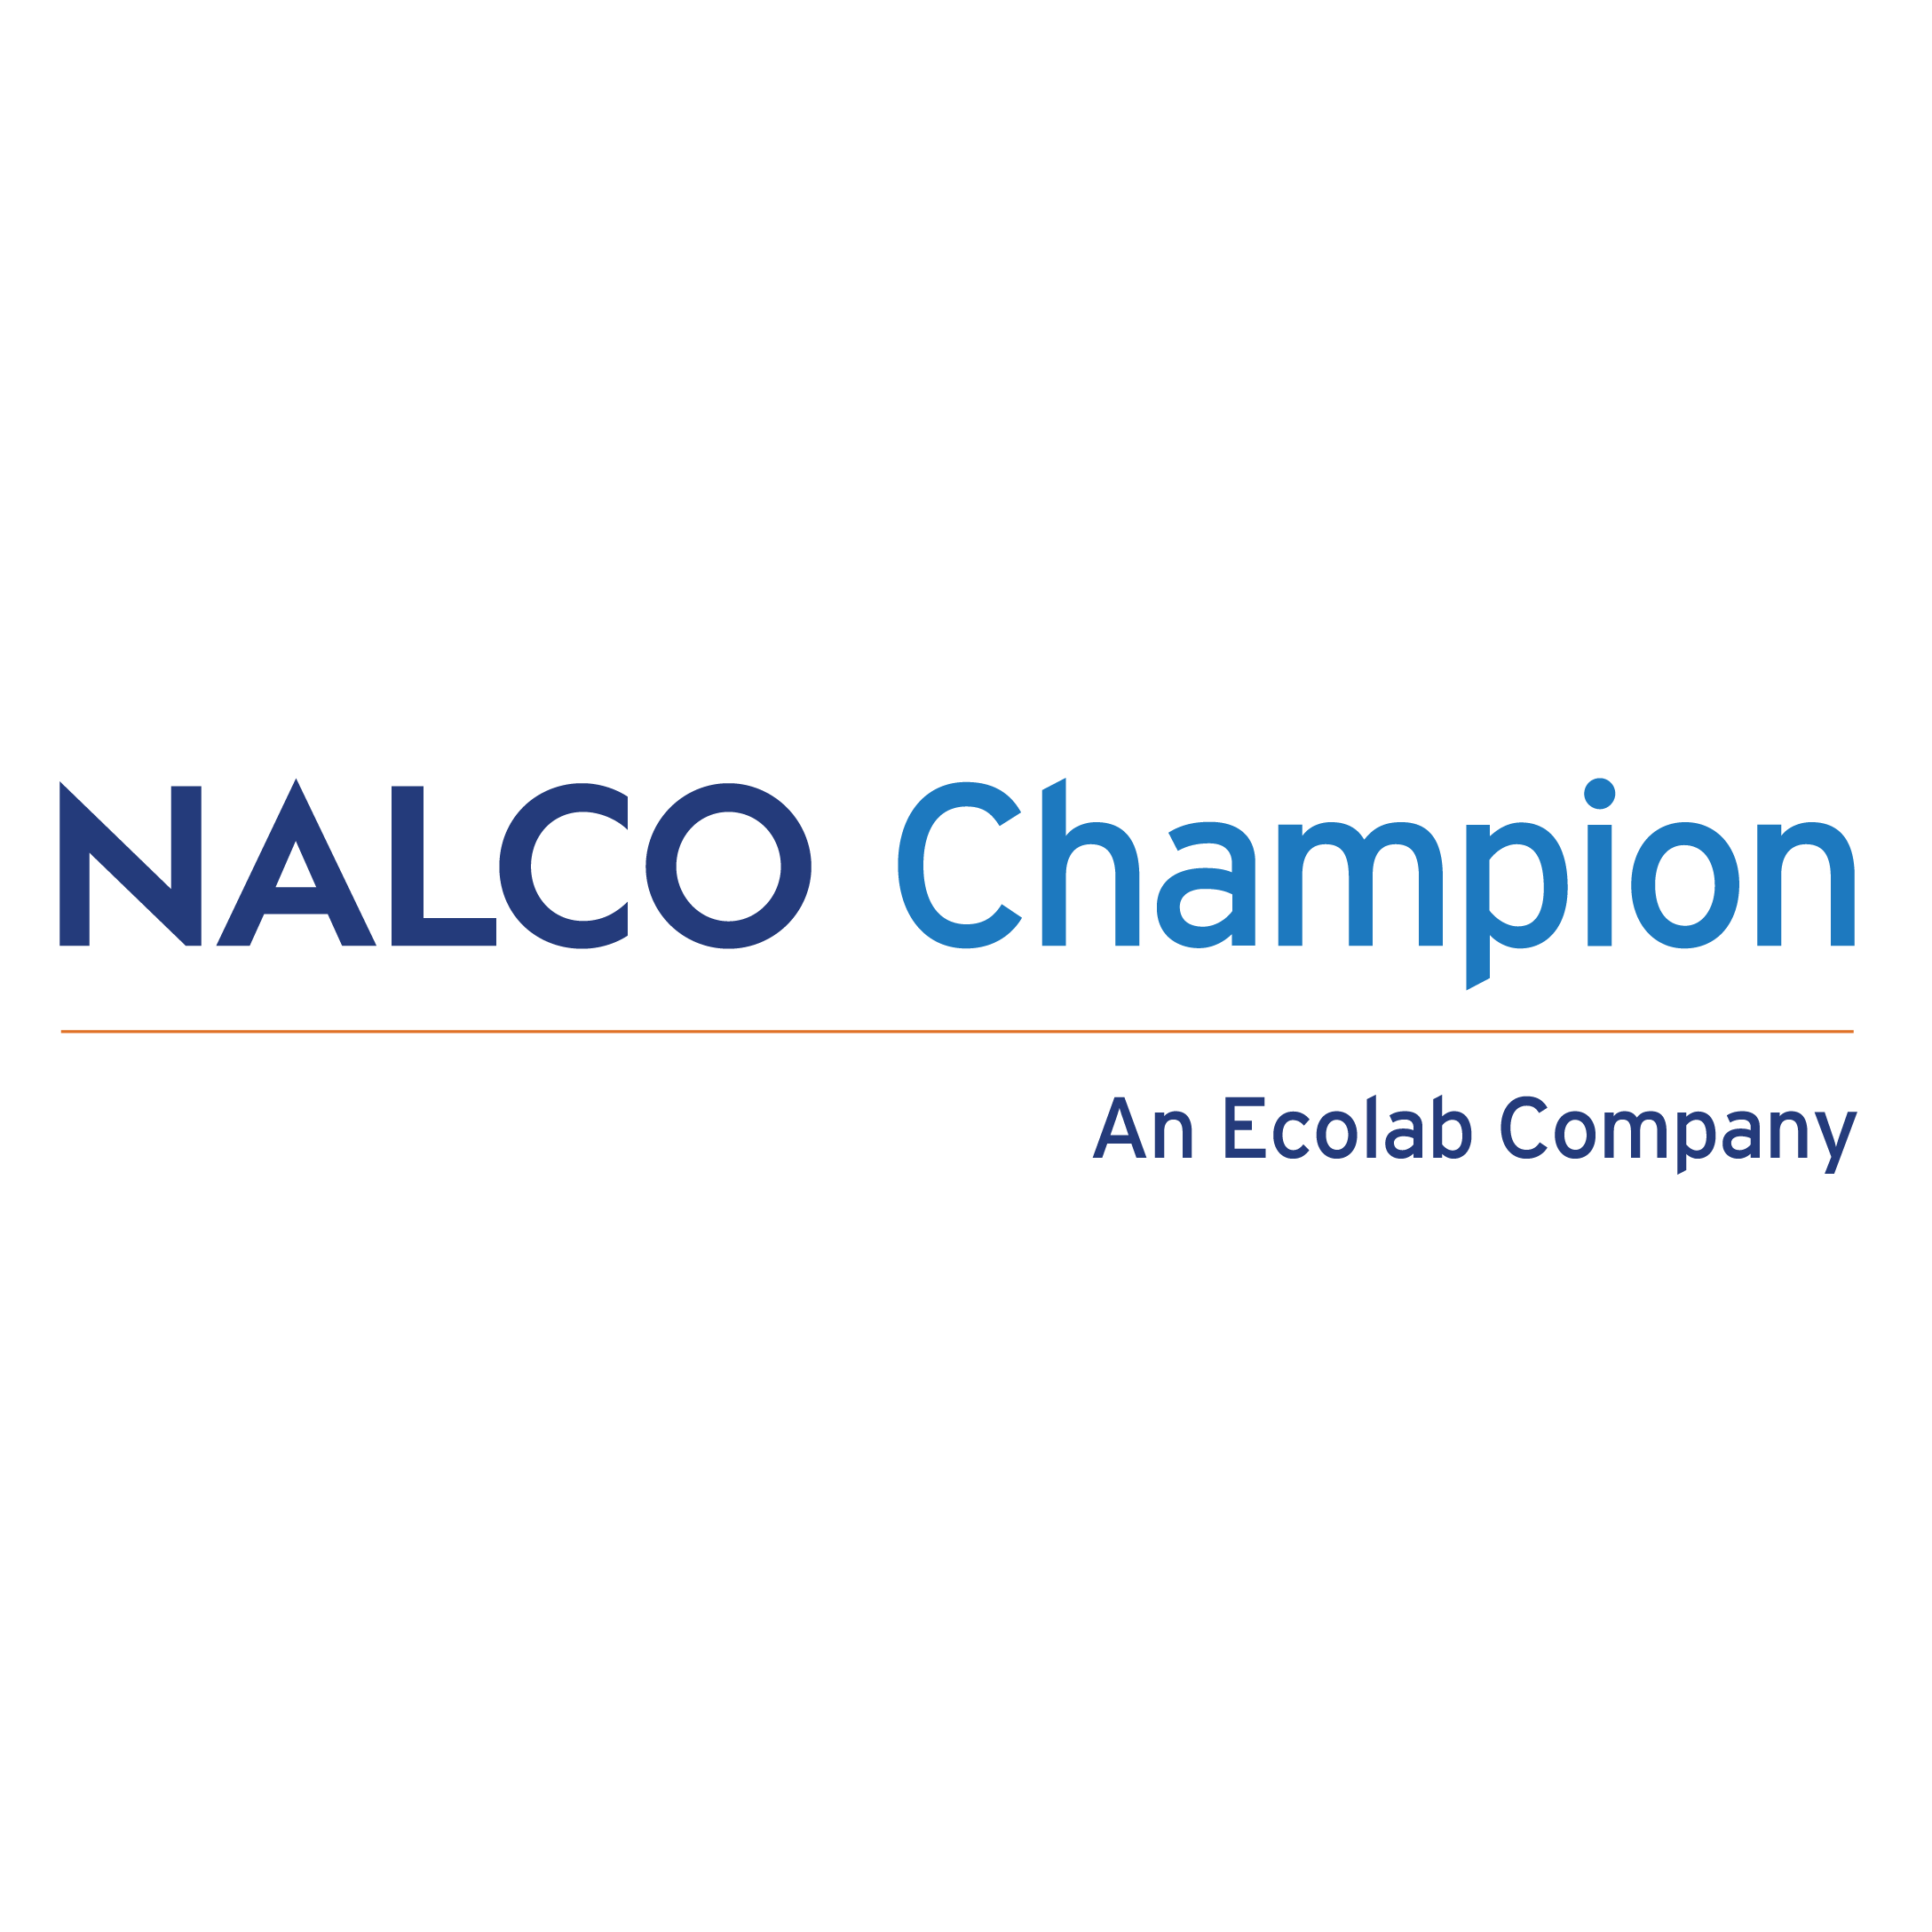 Nalco Champion